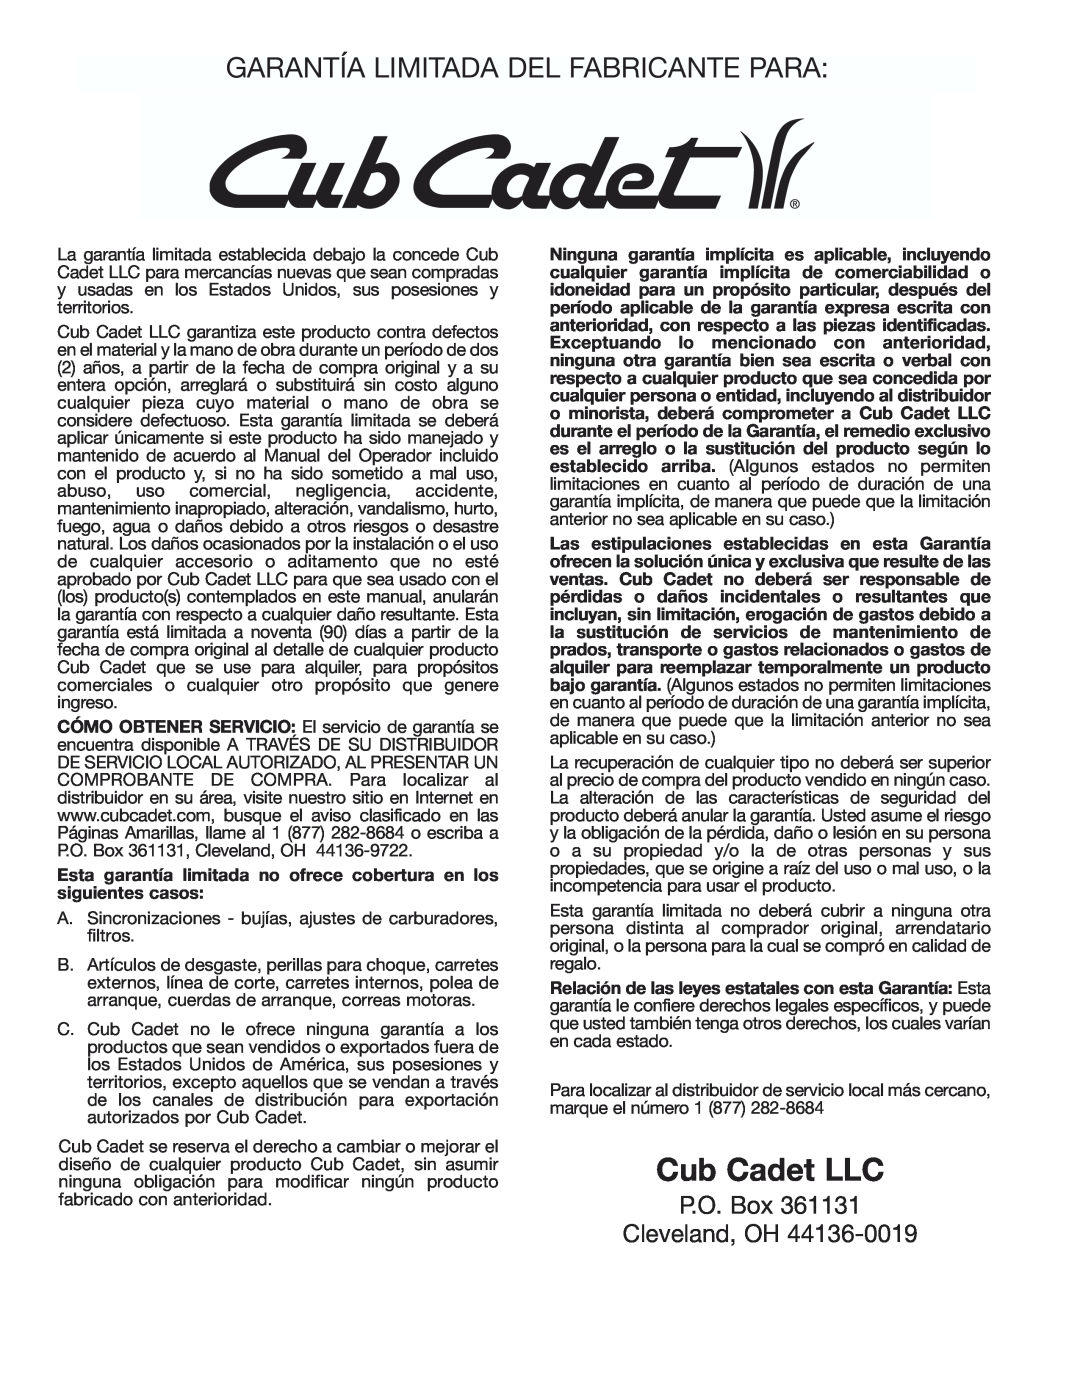 Cub Cadet CC3000 manual Garantía Limitada Del Fabricante Para, Cub Cadet LLC, P.O. Box Cleveland, OH 